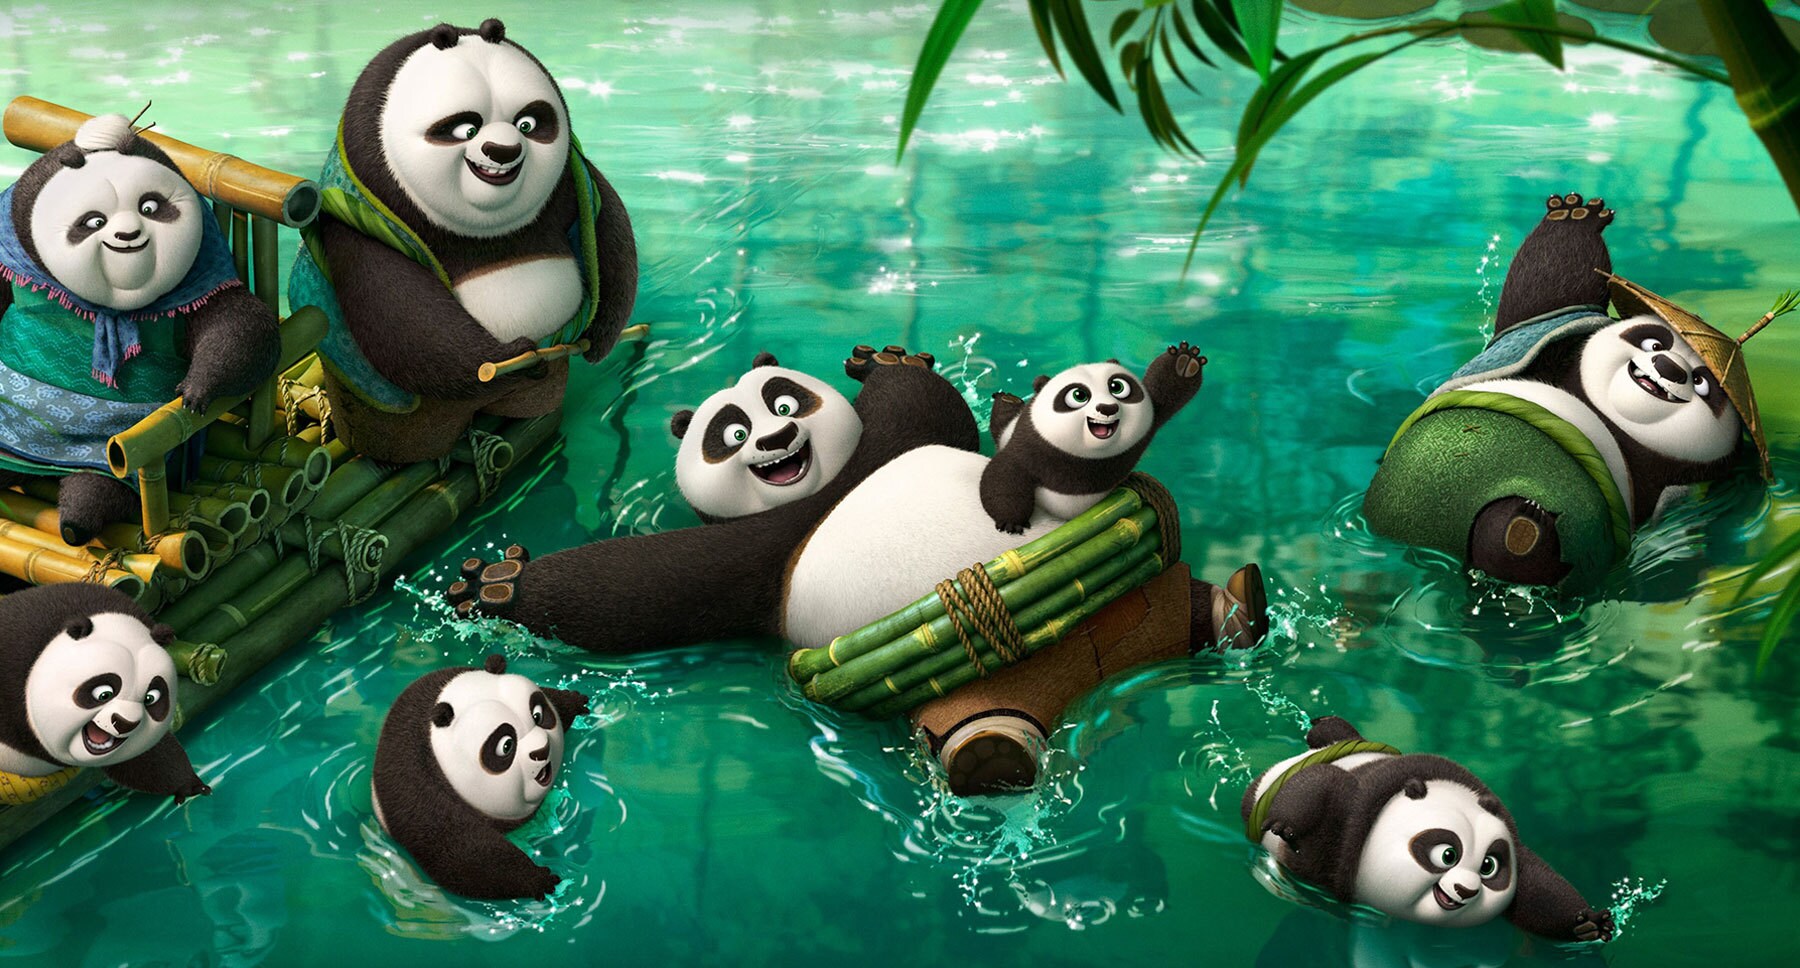 kung fu panda 3 full movie genvideos